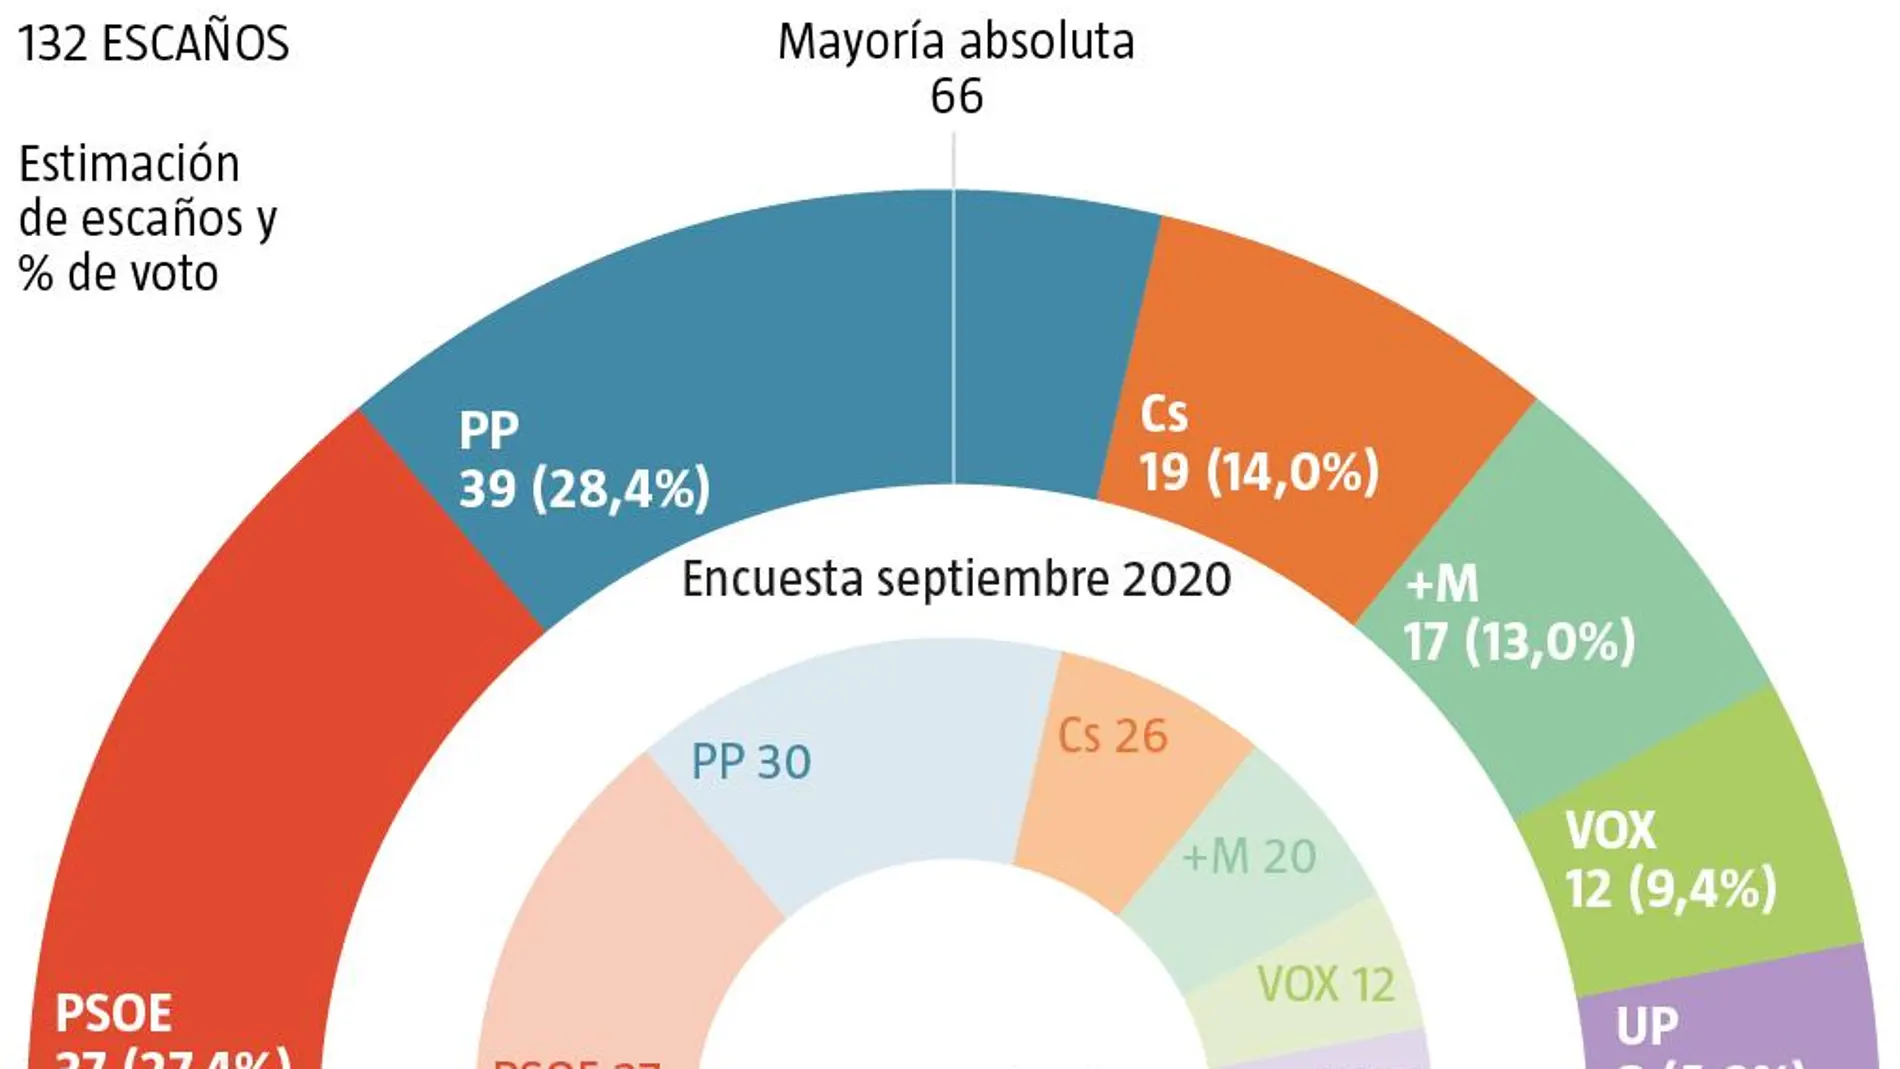 Encuesta electoral Madrid, NC Report septiembre 2020